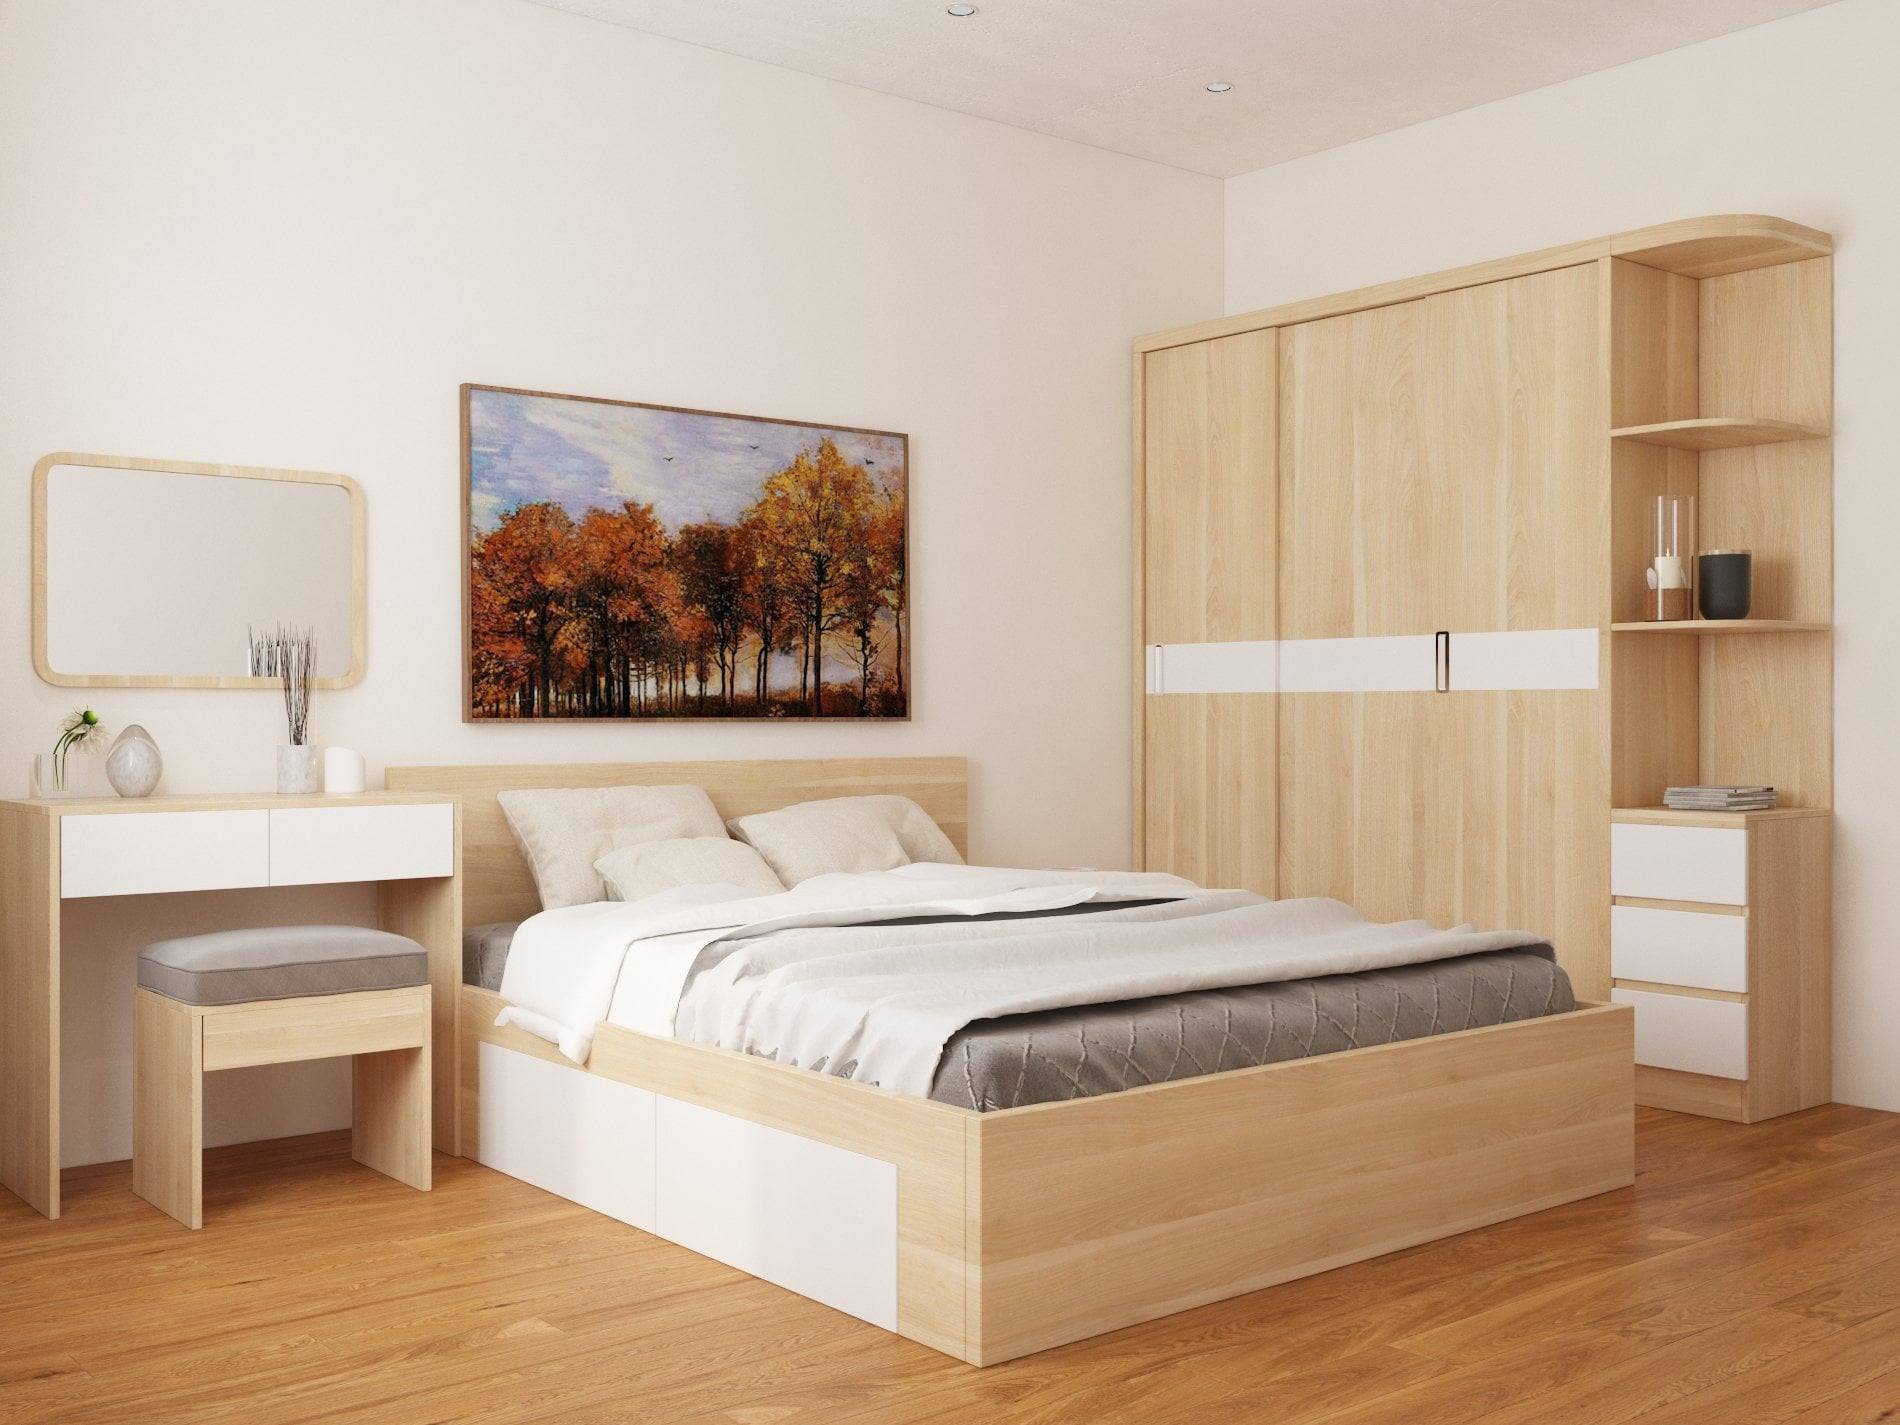 TOP giường có hộc phía dưới tốt nhất cho phòng ngủ cá nhân và gia đình